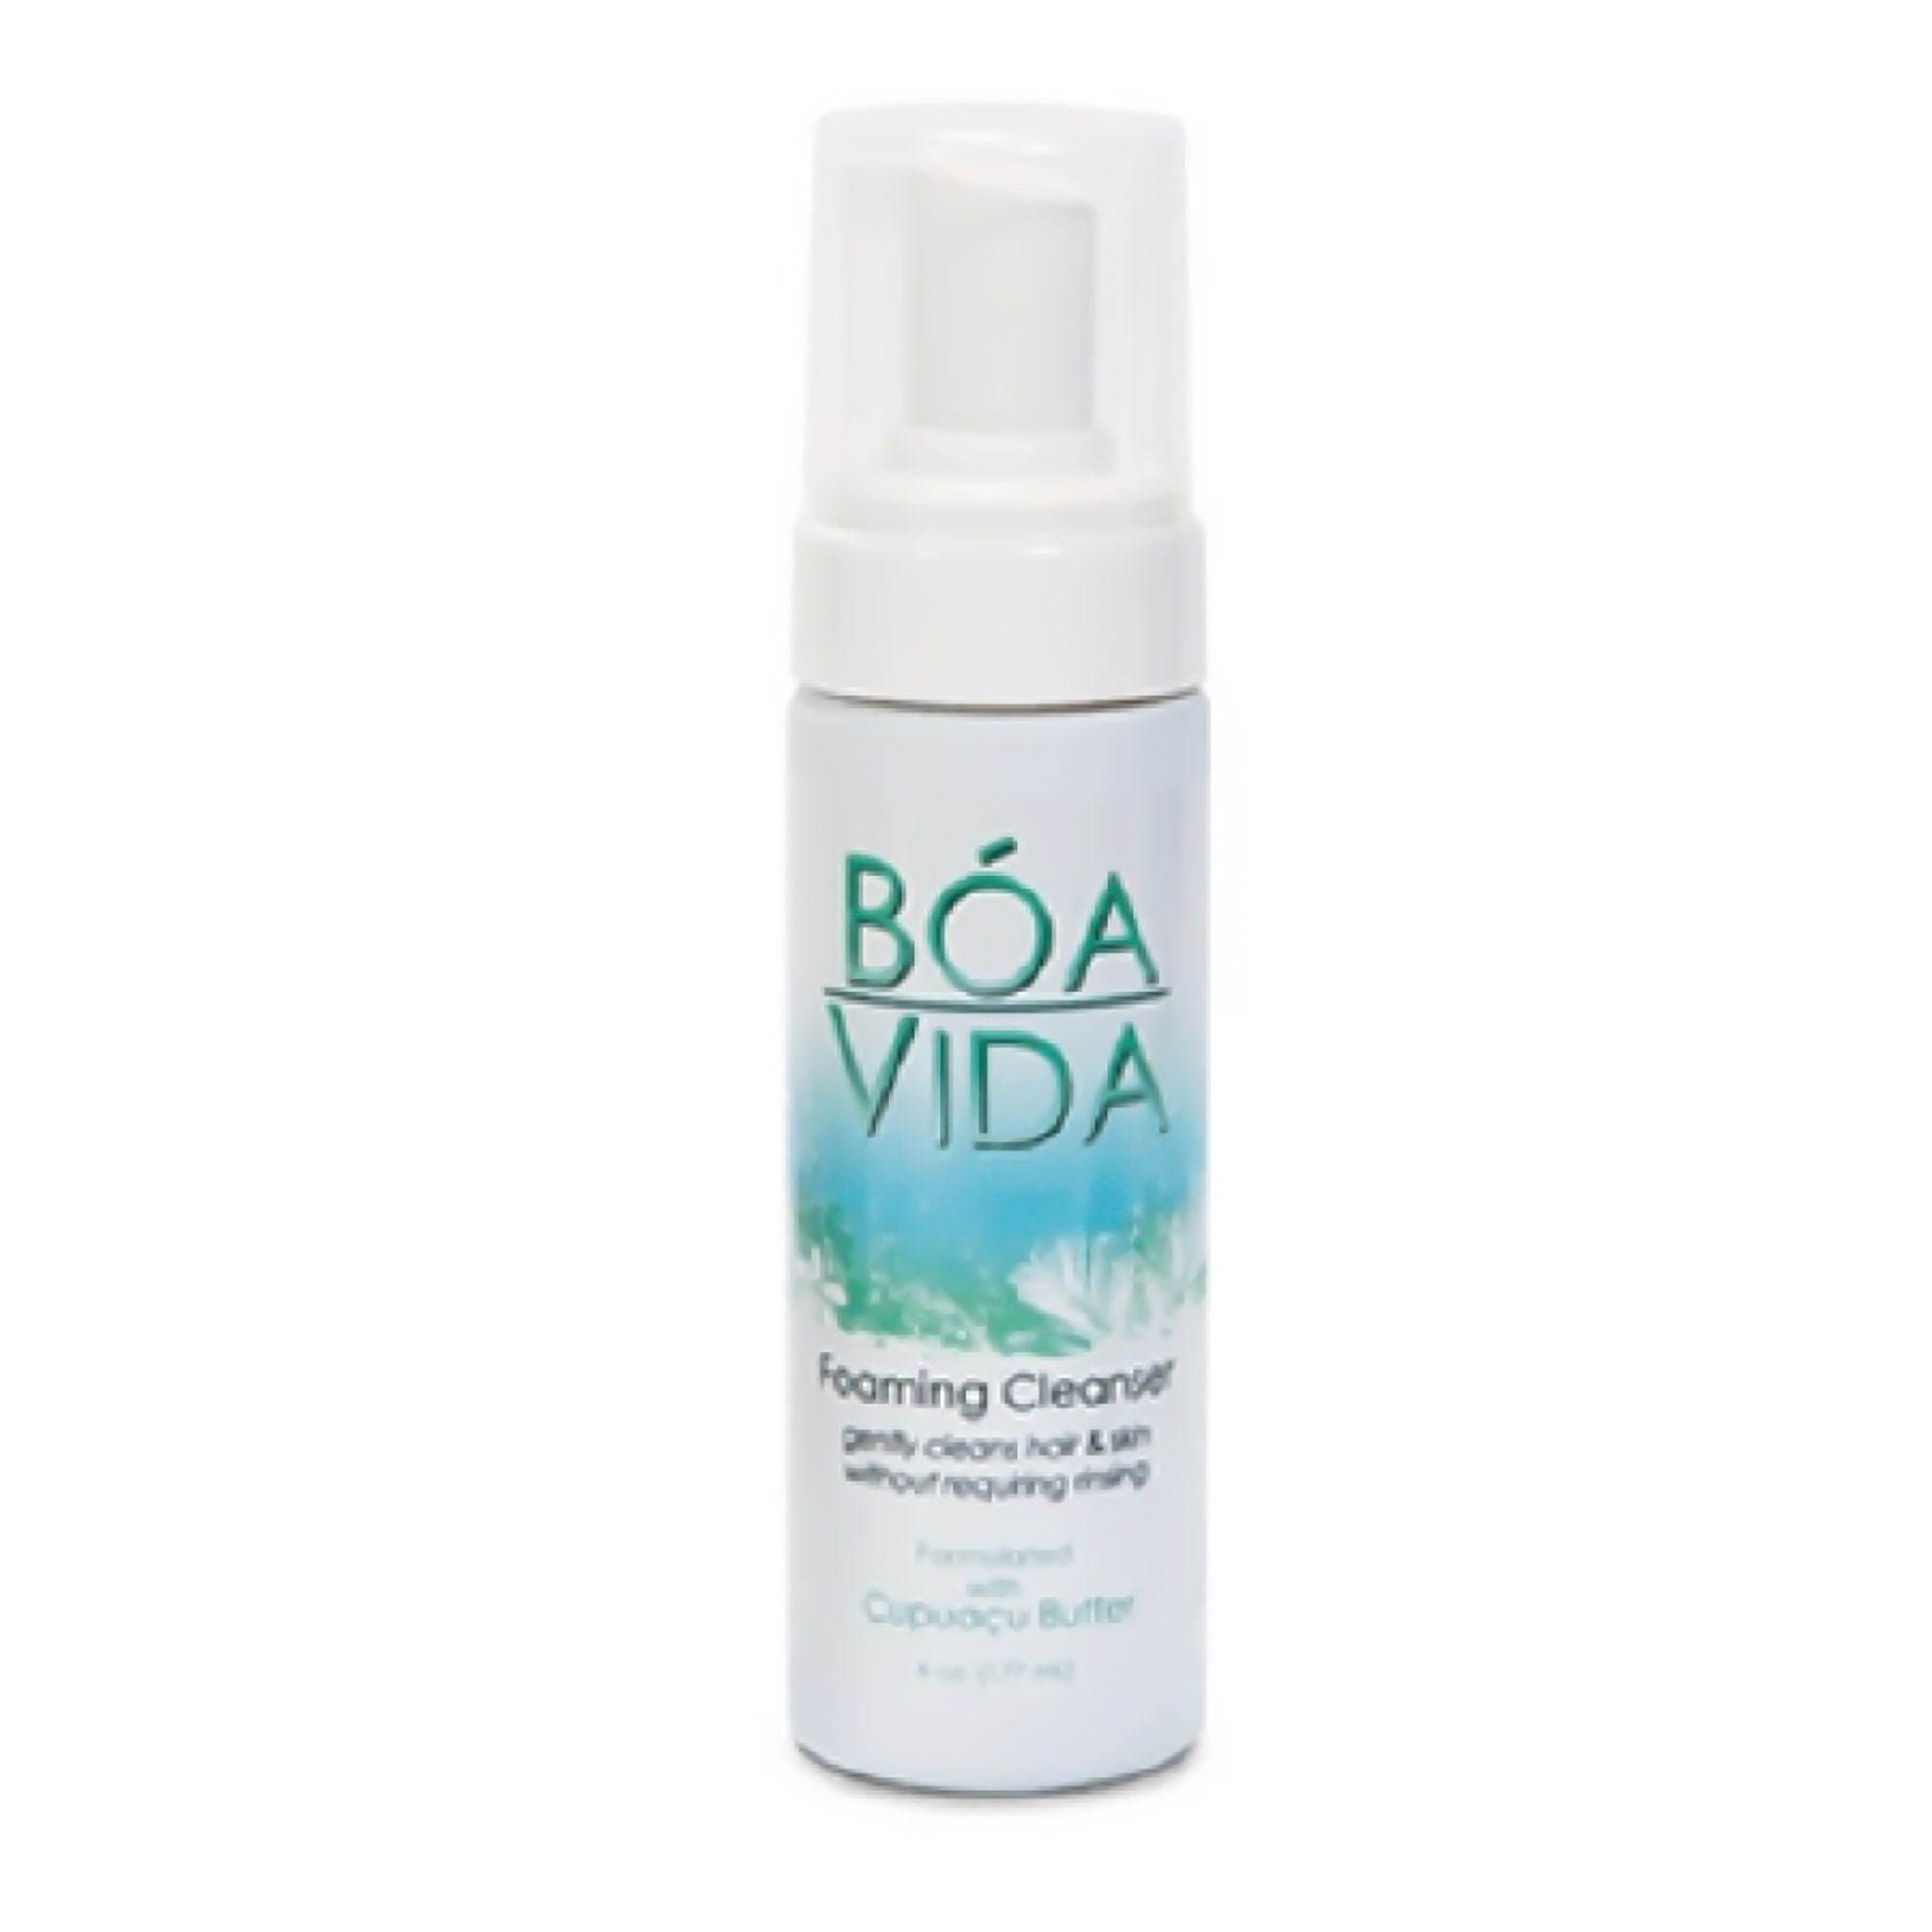 Rinse-Free Shampoo and Body Wash BoaVida 6 oz. Pump Bottle Citrus Vanilla Scent